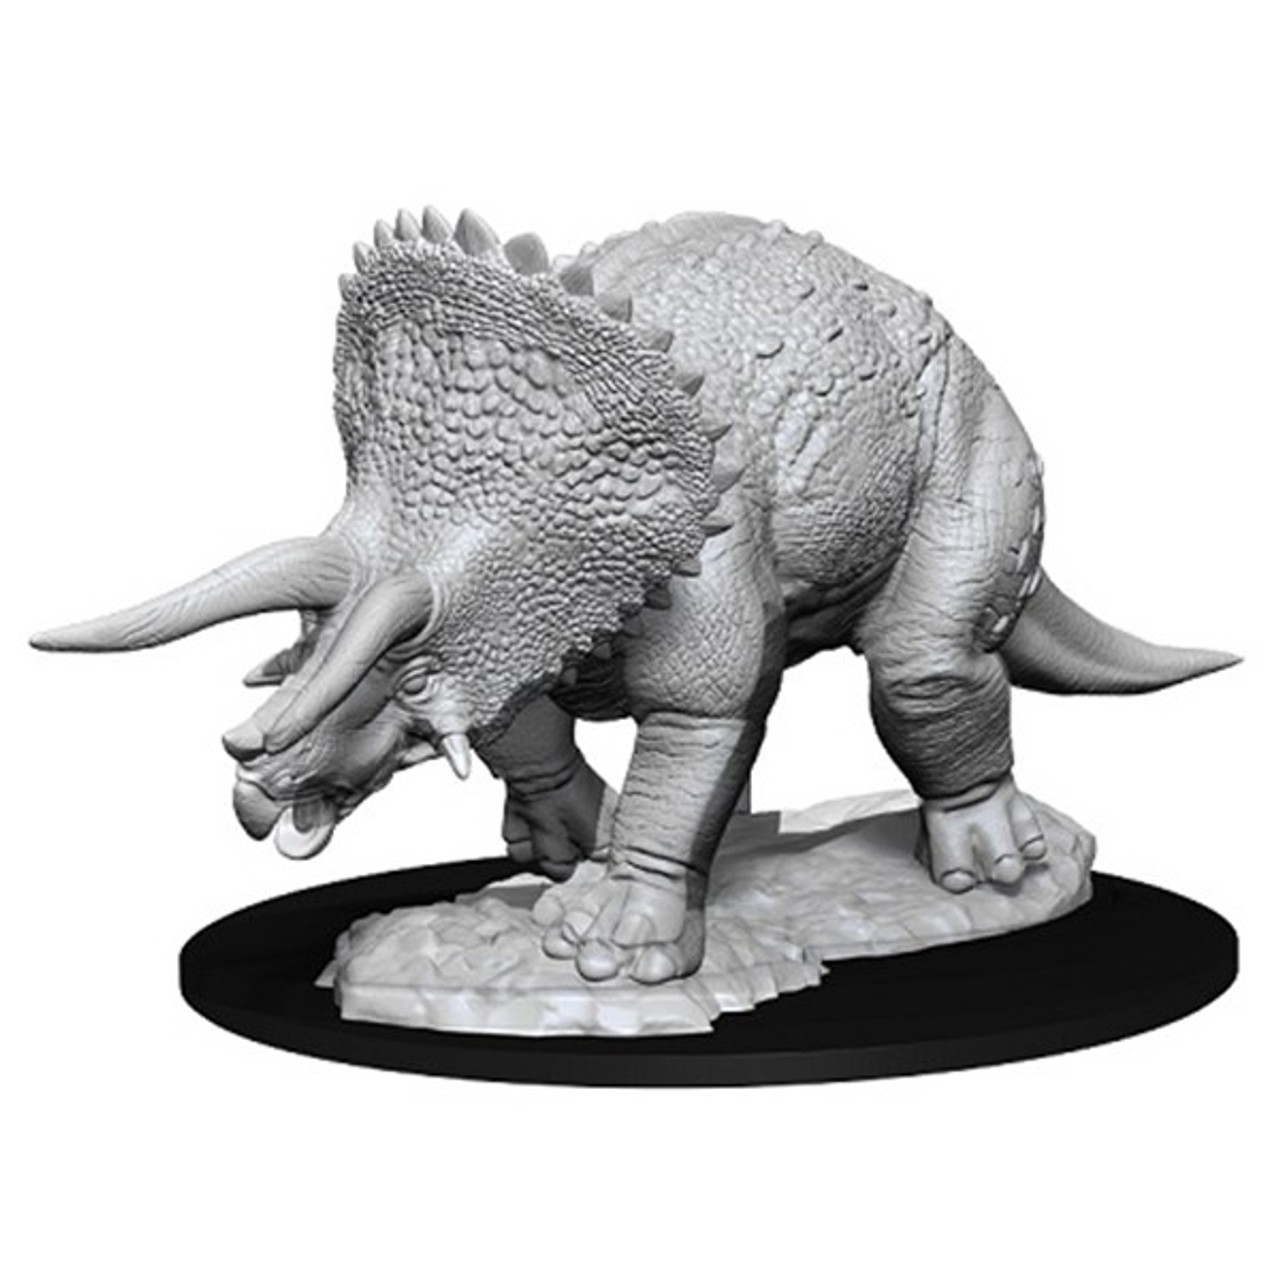 D&D Triceratops W7 Nolzur's Marvelous Miniatures Dungeons & Dragons WZK73533 